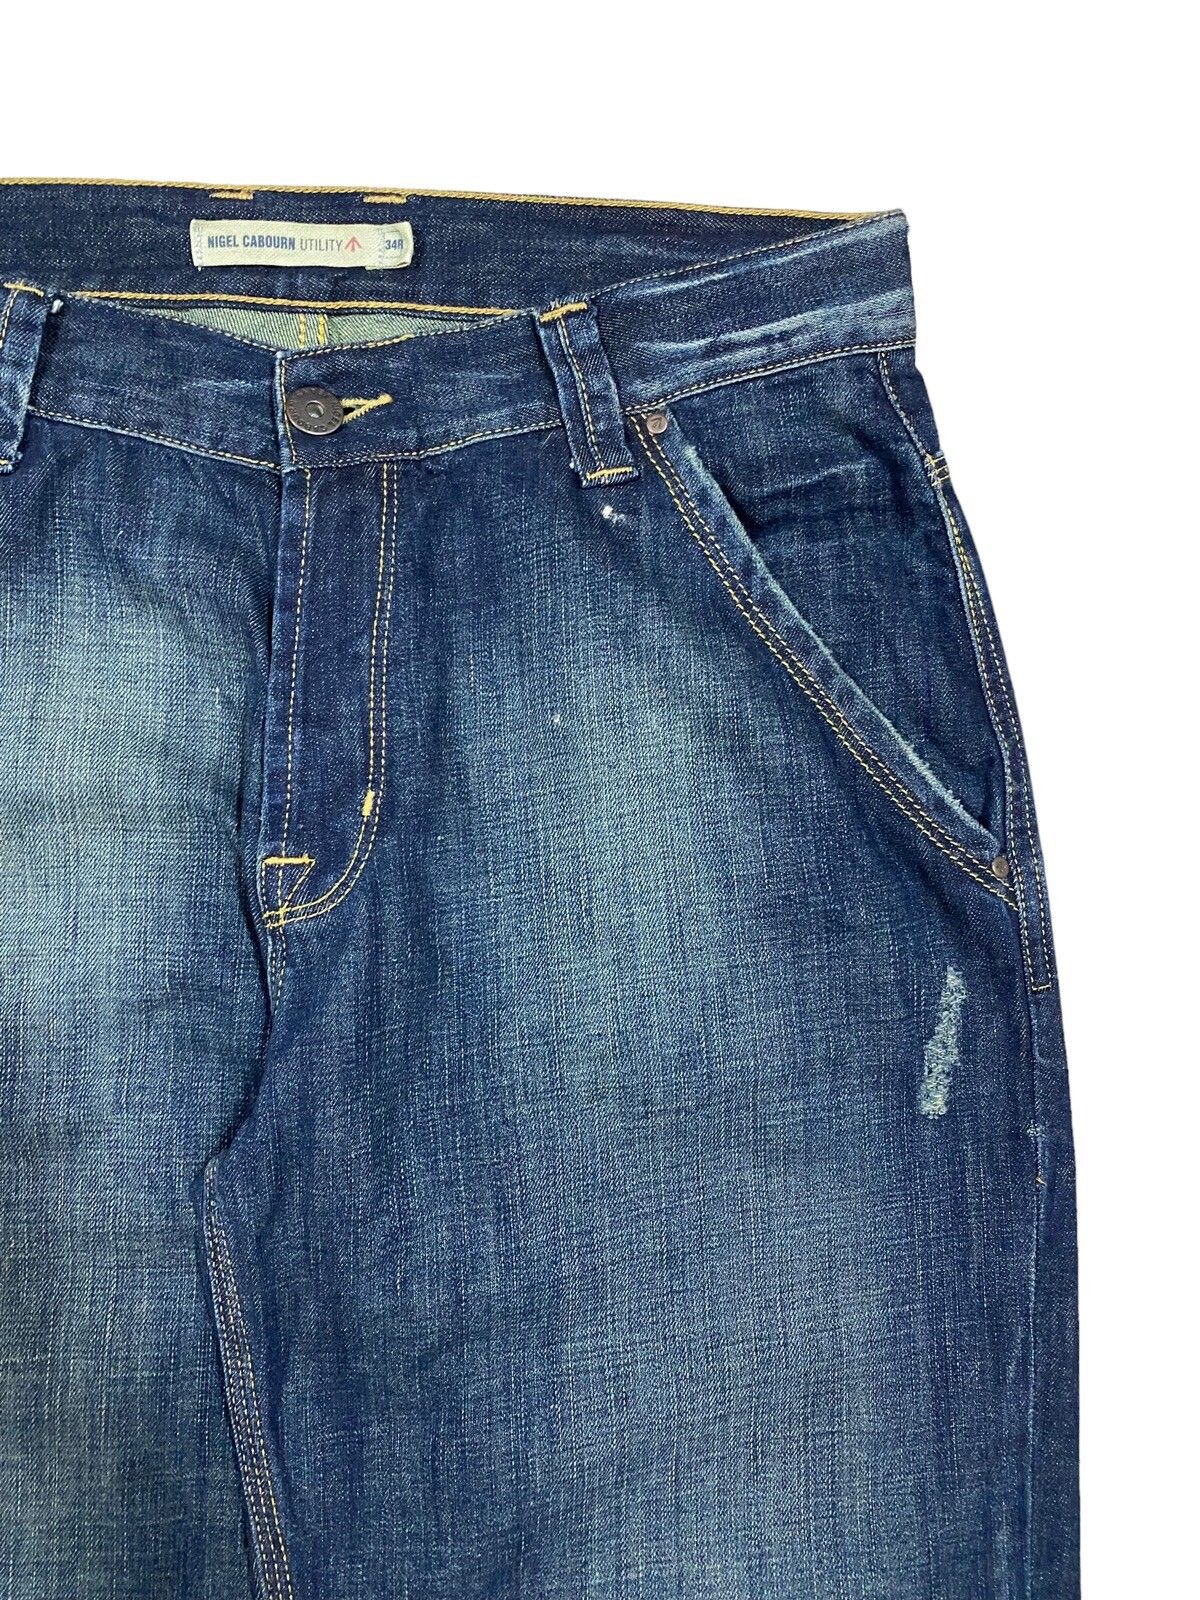 Vtg🔥Nigel Carbourn Utility Dark Blue Wash Jeans - 8